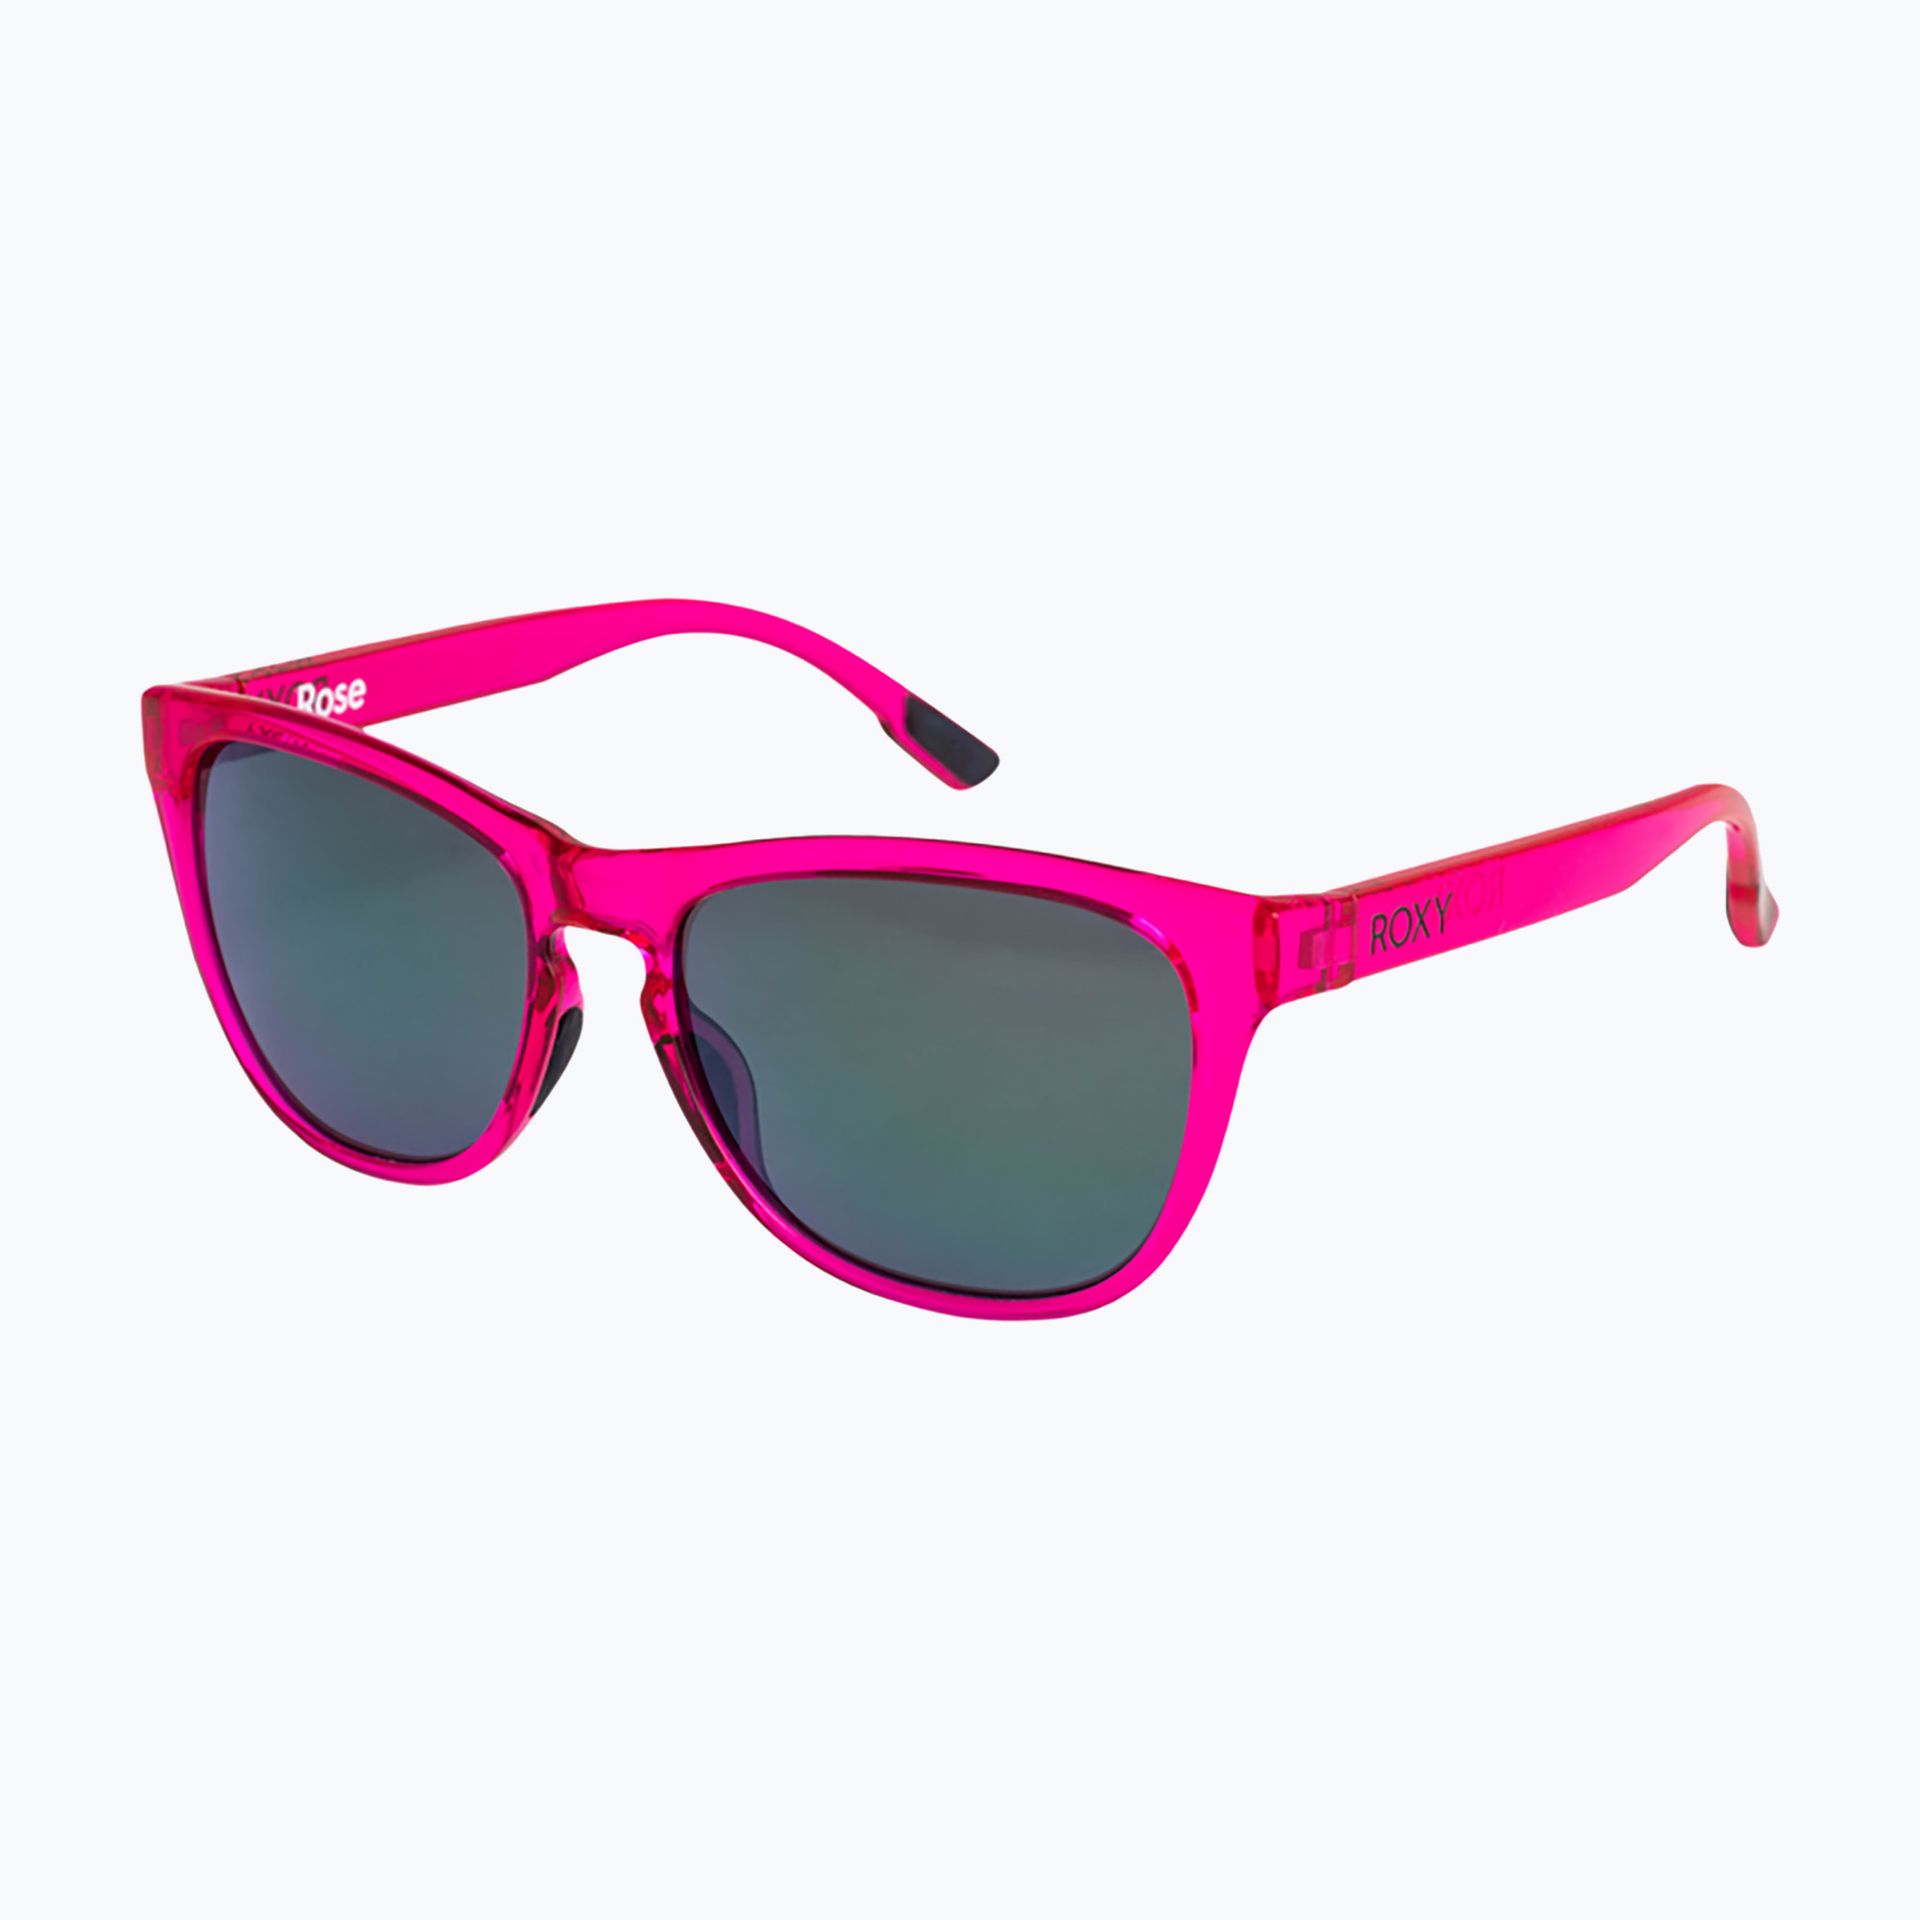 Okulary przeciwsłoneczne damskie ROXY Rose pink/grey | WYSYŁKA W 24H | 30 DNI NA ZWROT